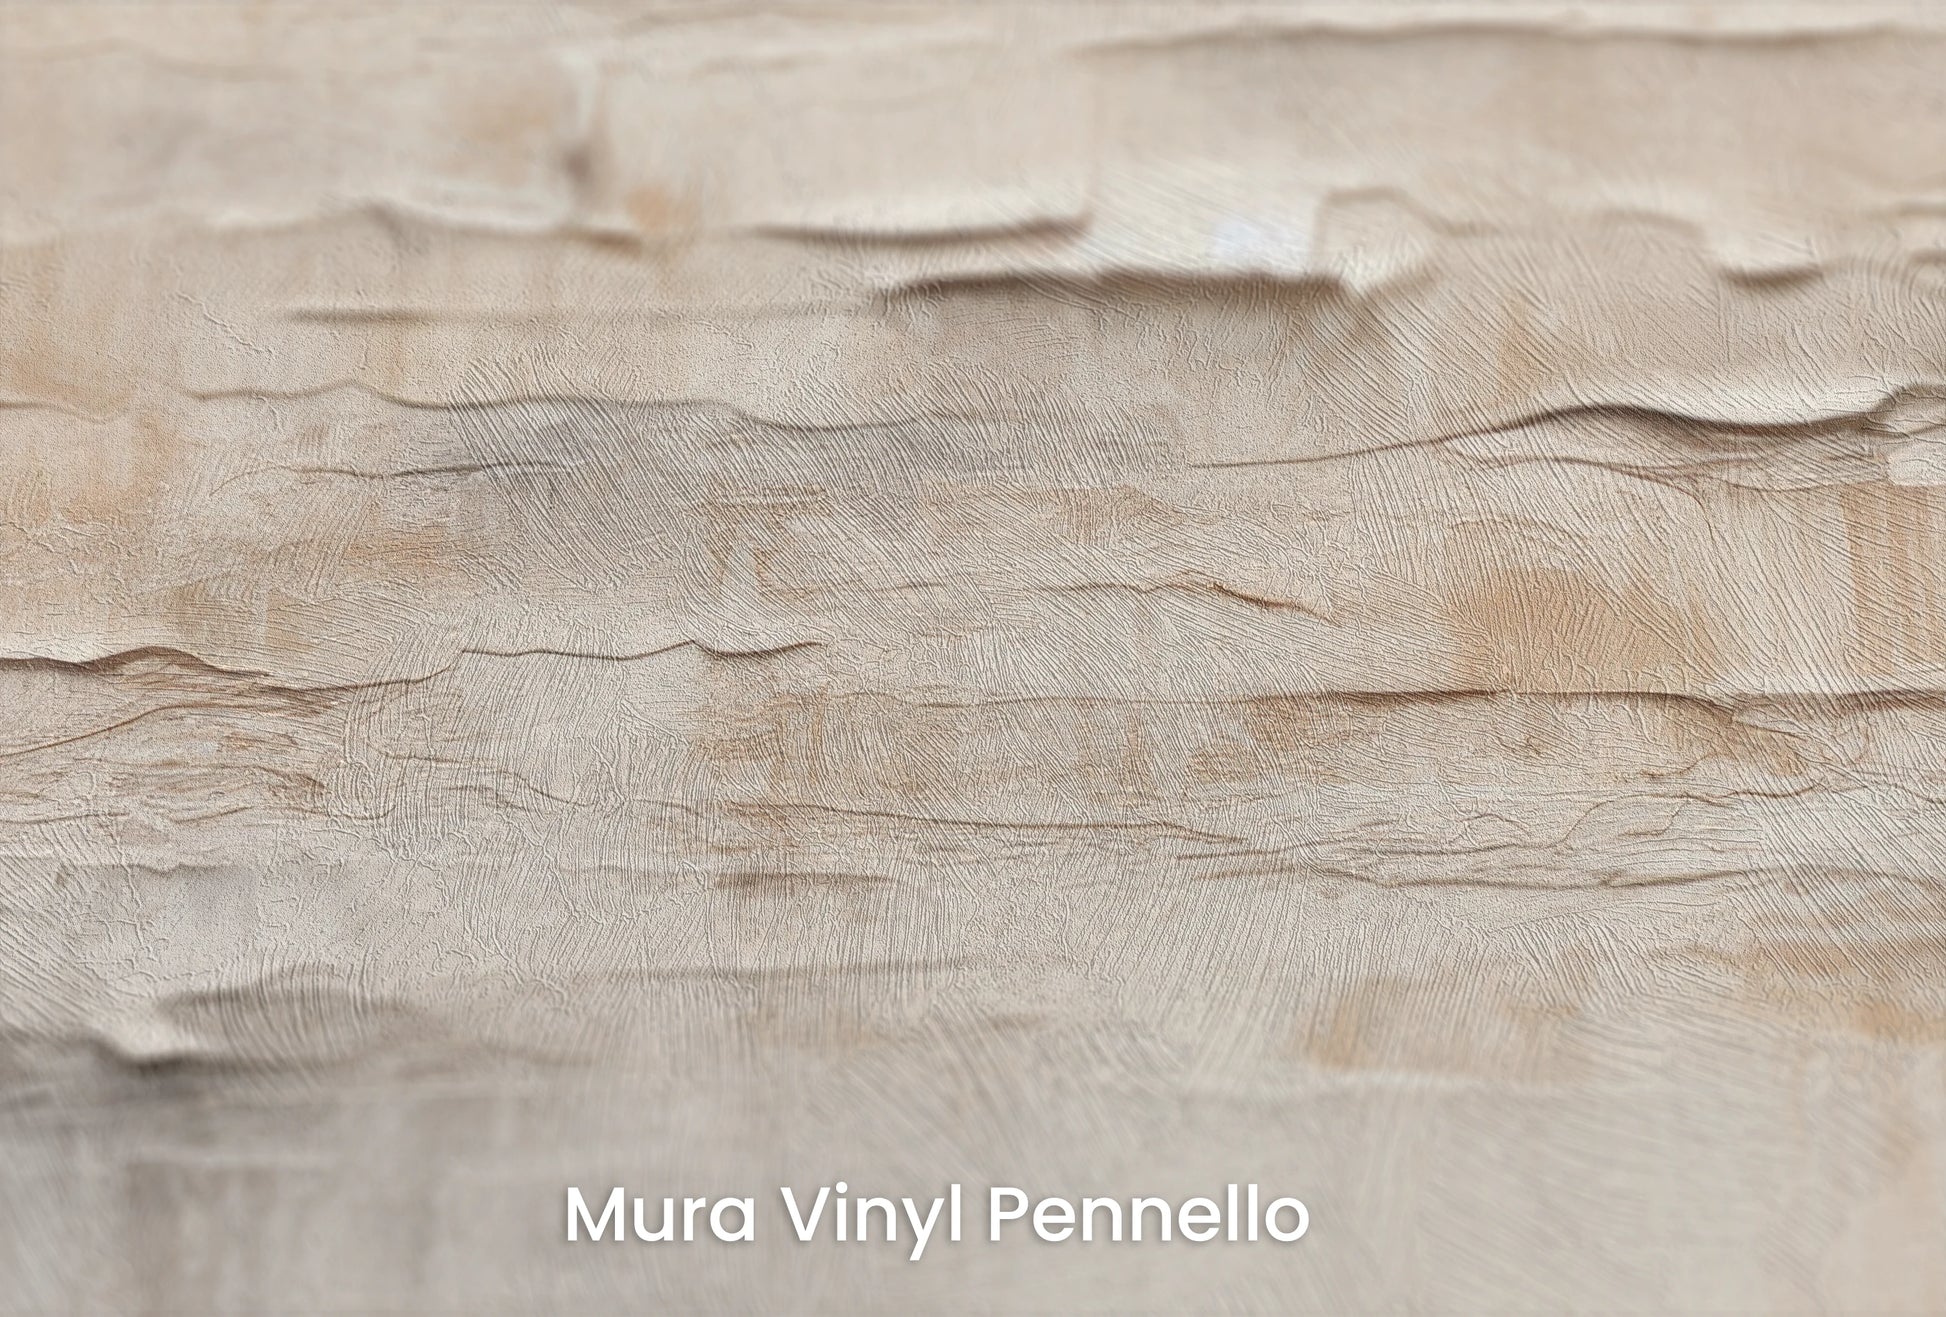 Zbliżenie na artystyczną fototapetę o nazwie Whispering Layers na podłożu Mura Vinyl Pennello - faktura pociągnięć pędzla malarskiego.